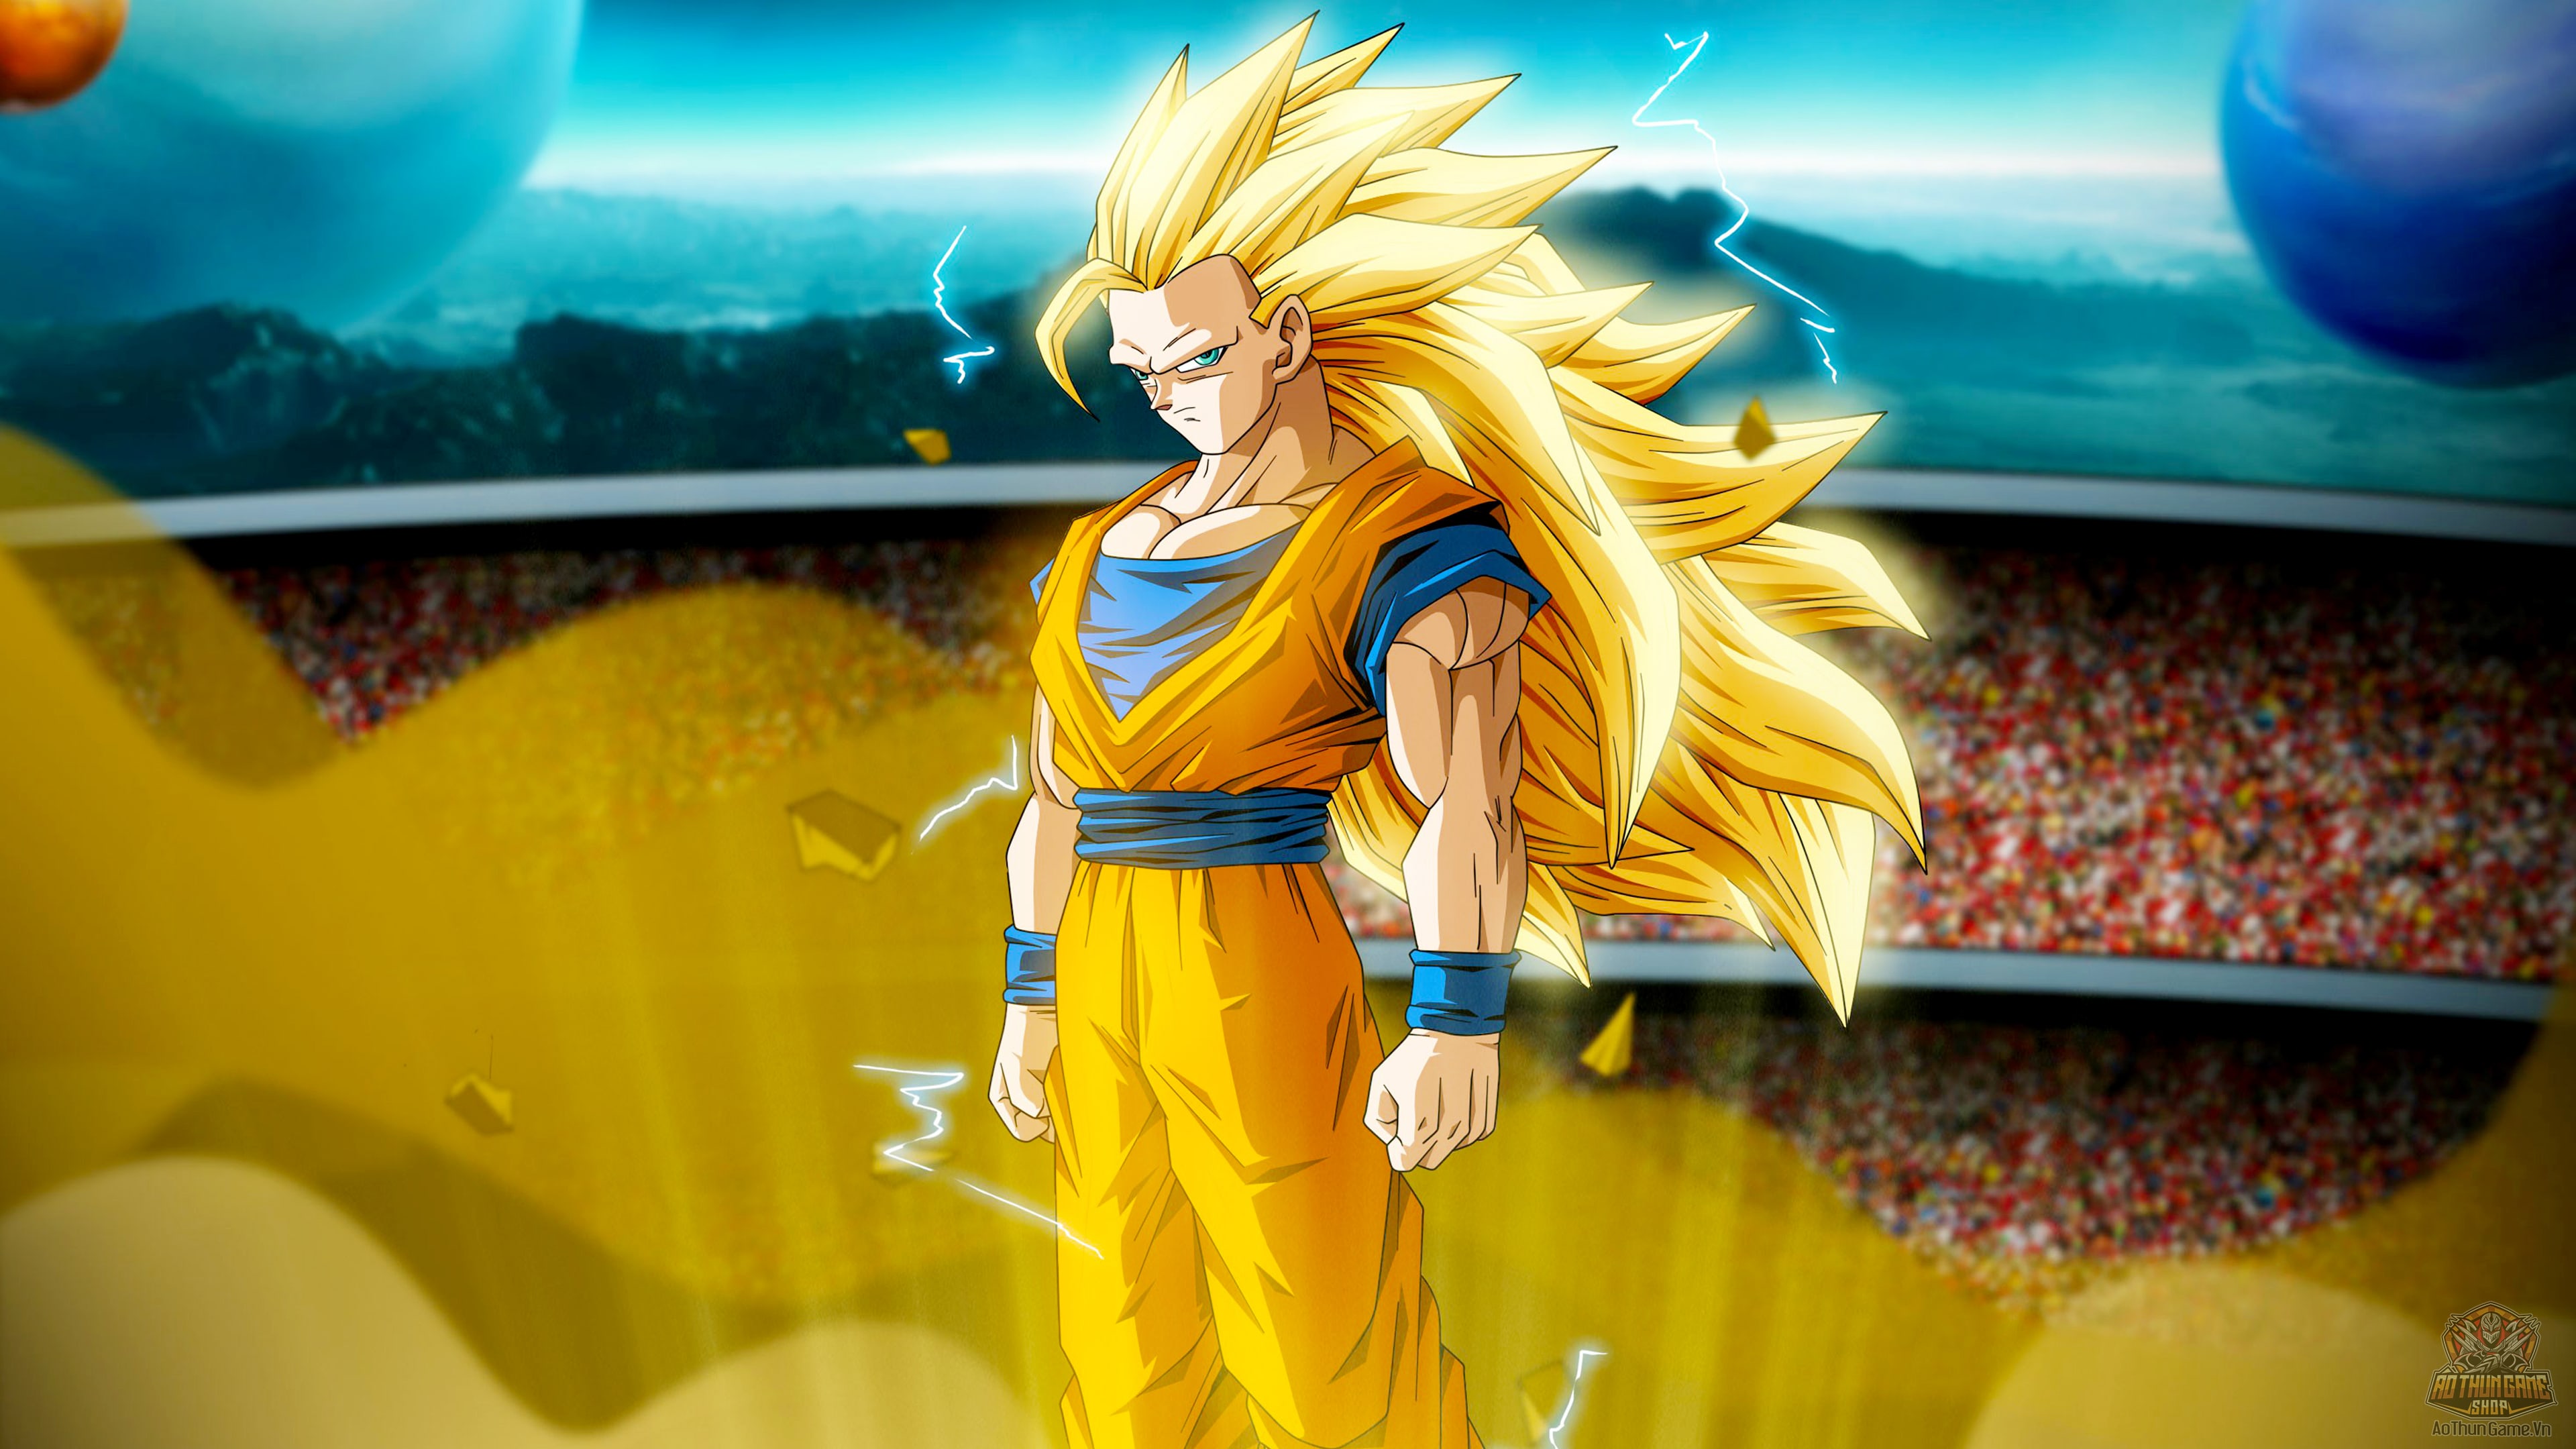 Hình ảnh goku ngầu: Bạn có thích những hình ảnh của Goku ngầu mà đầy sức mạnh không? Hãy cùng xem qua những bức hình được chọn lọc với trang phục đặc biệt và những tư thế đầy thách thức của anh ta.